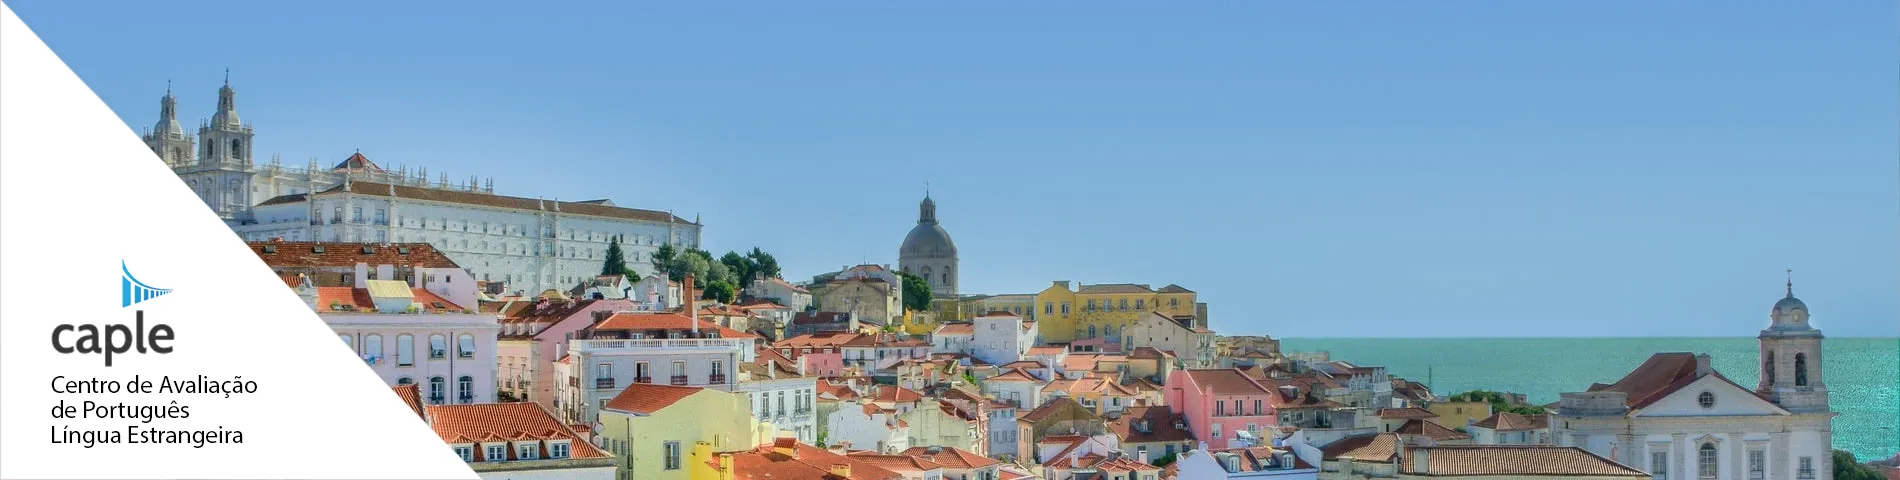 Lisboa - CAPLE